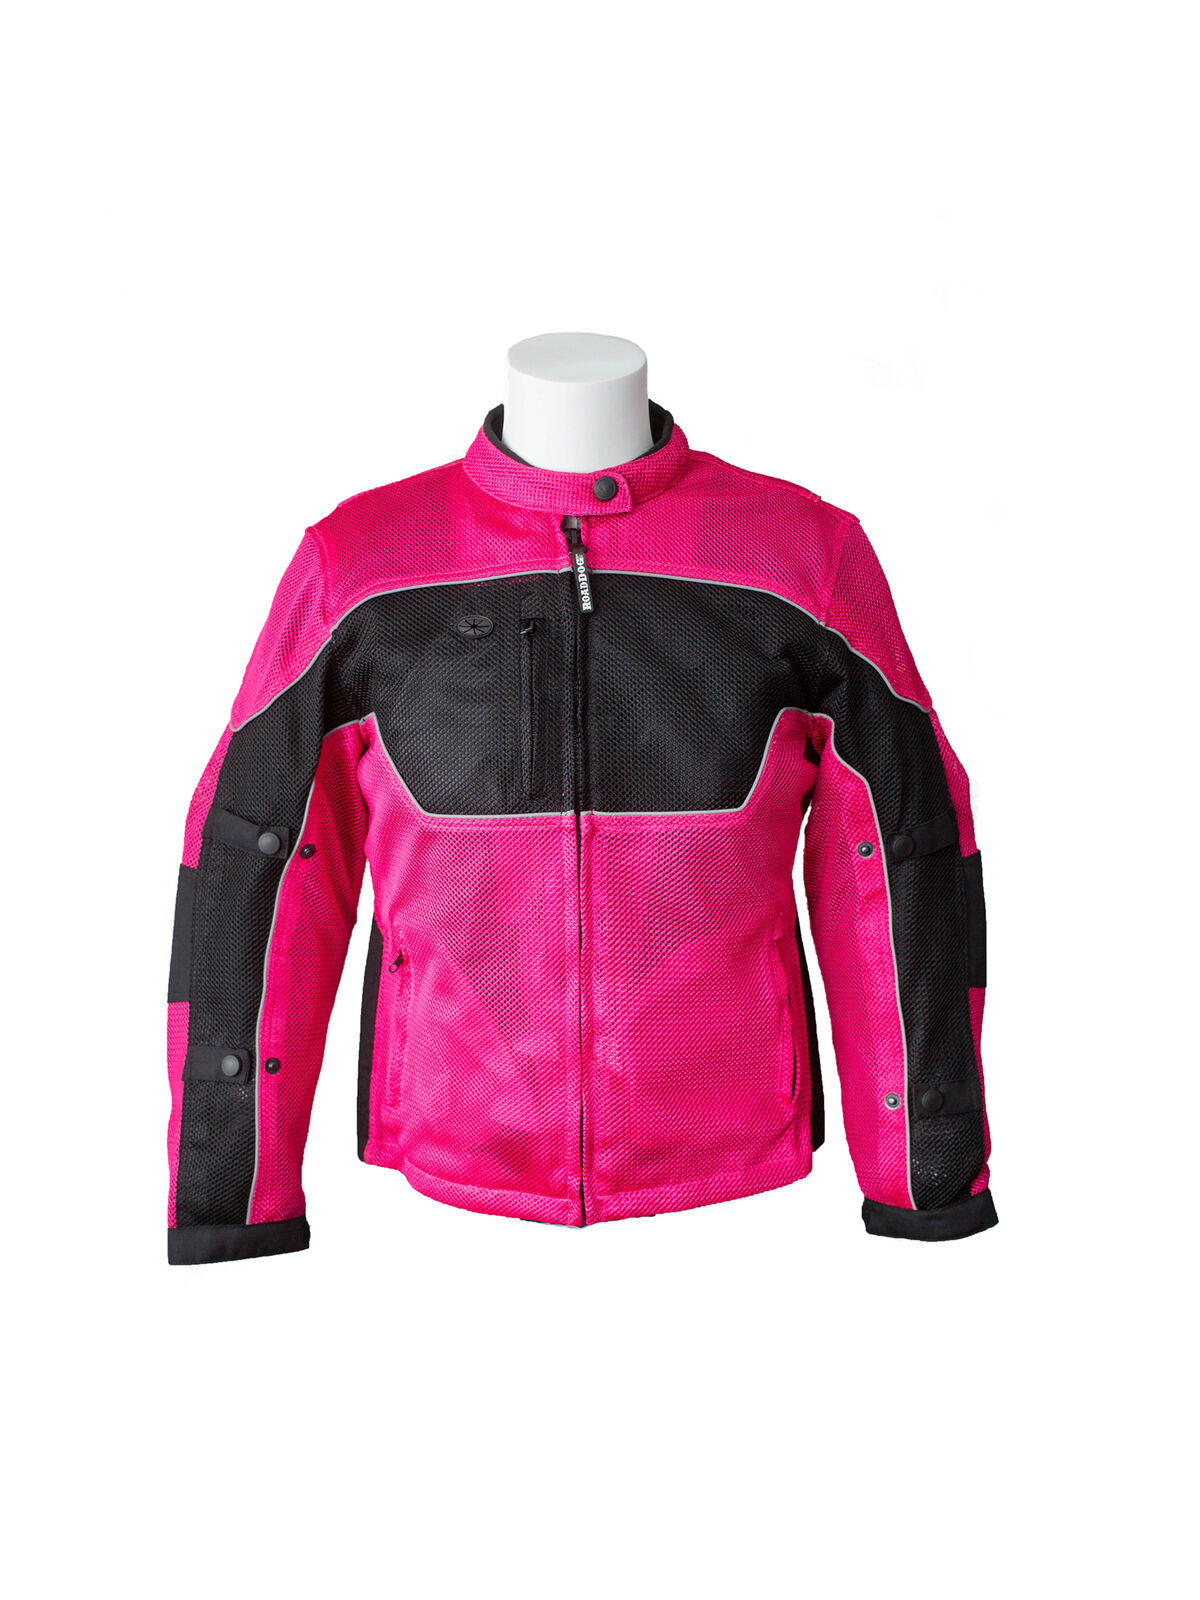 RoadDog Hurricane Mesh Motorcycle Riding Jacket Pink Women\'s Medium